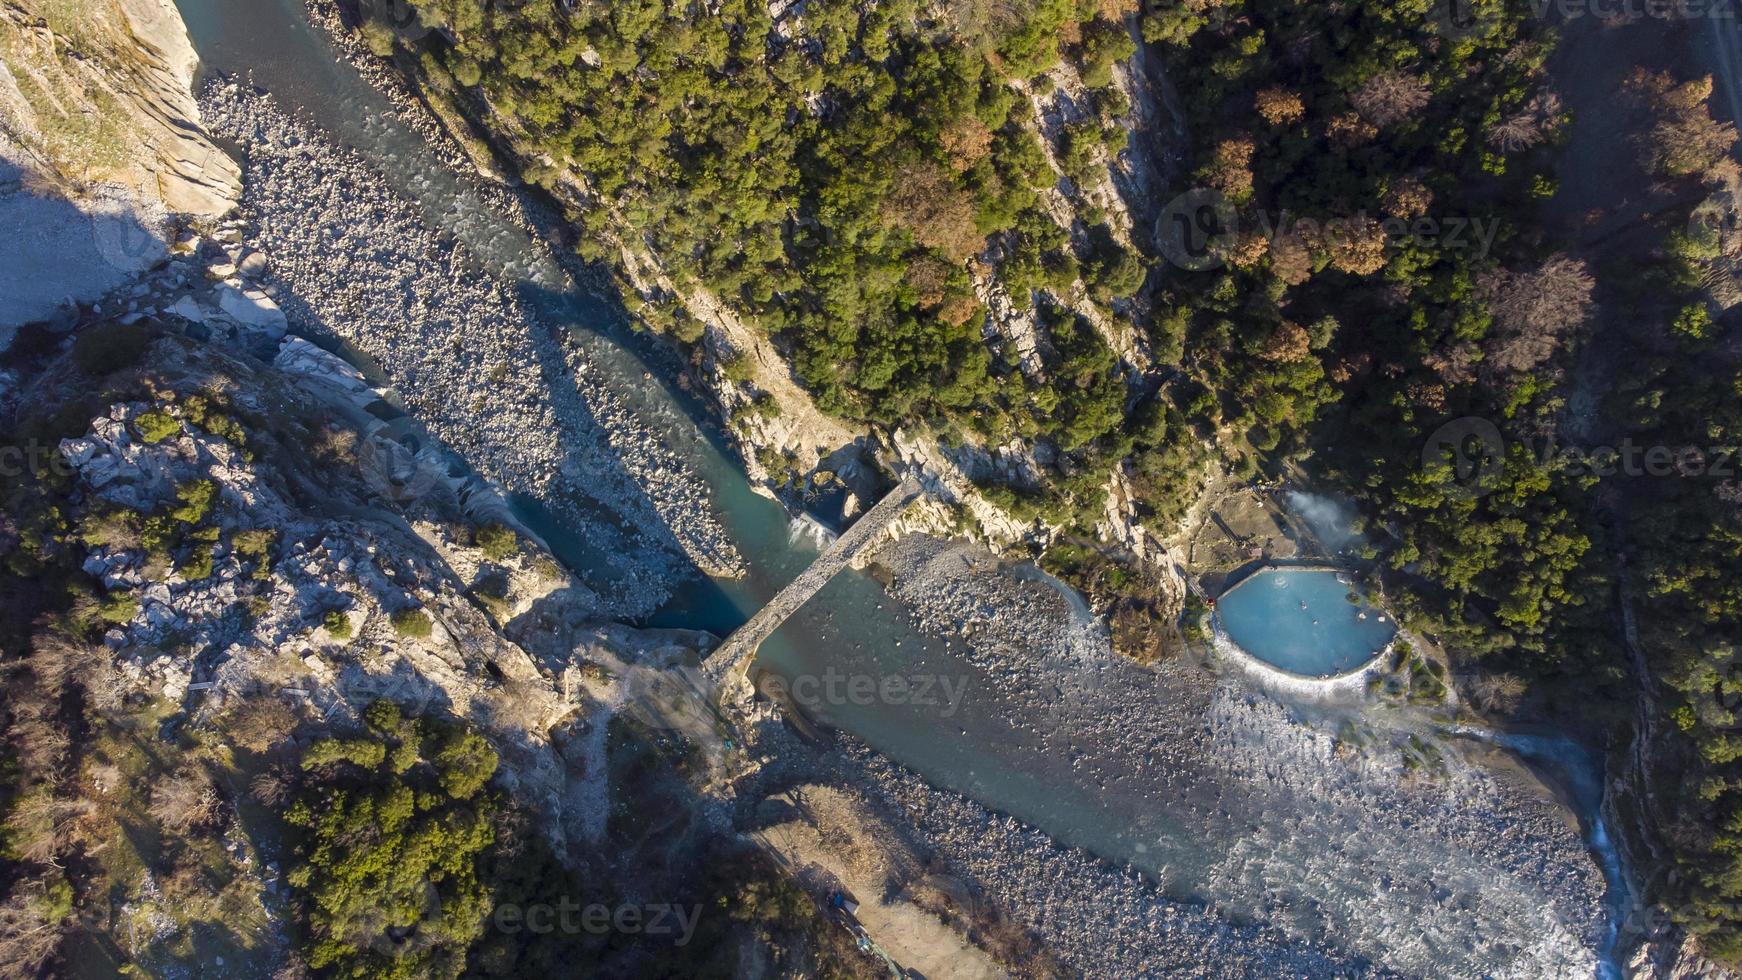 luchtfoto drone weergave van mensen zwemmen en baden in warmwaterbronnen thermale baden op een zonnige winterdag. prachtige natuurwonderen. verbinden met de natuur. vrijheid en zoeken naar een pure gemoedstoestand. foto